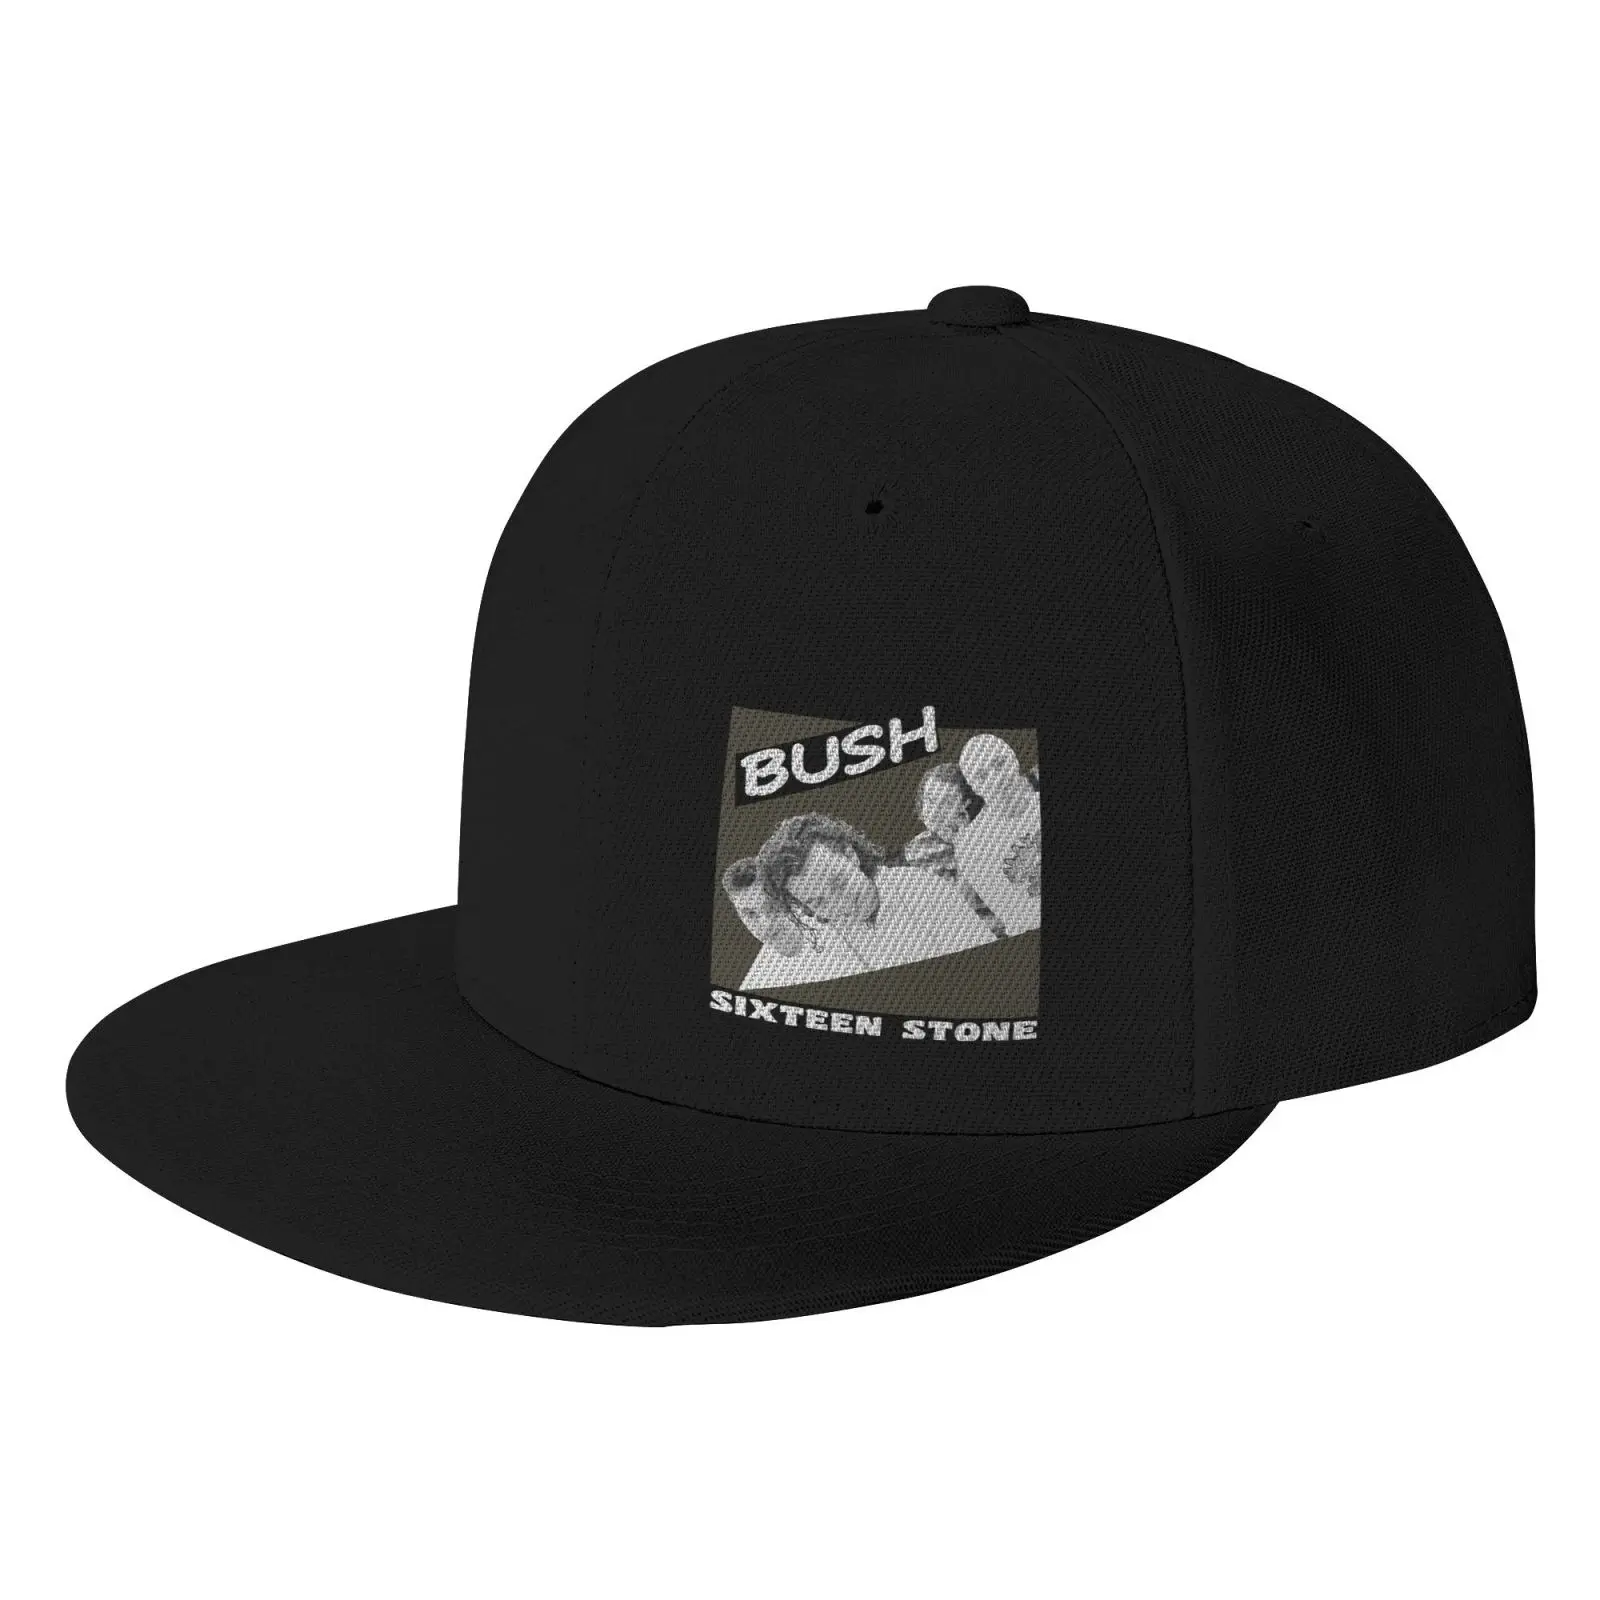 

Мужская кепка для активного отдыха Bush 16 Stone 1996, Мужская кепка, кепка для гольфа, Мужская кепка s время приключений, Женская Мужская кепка, шапк...